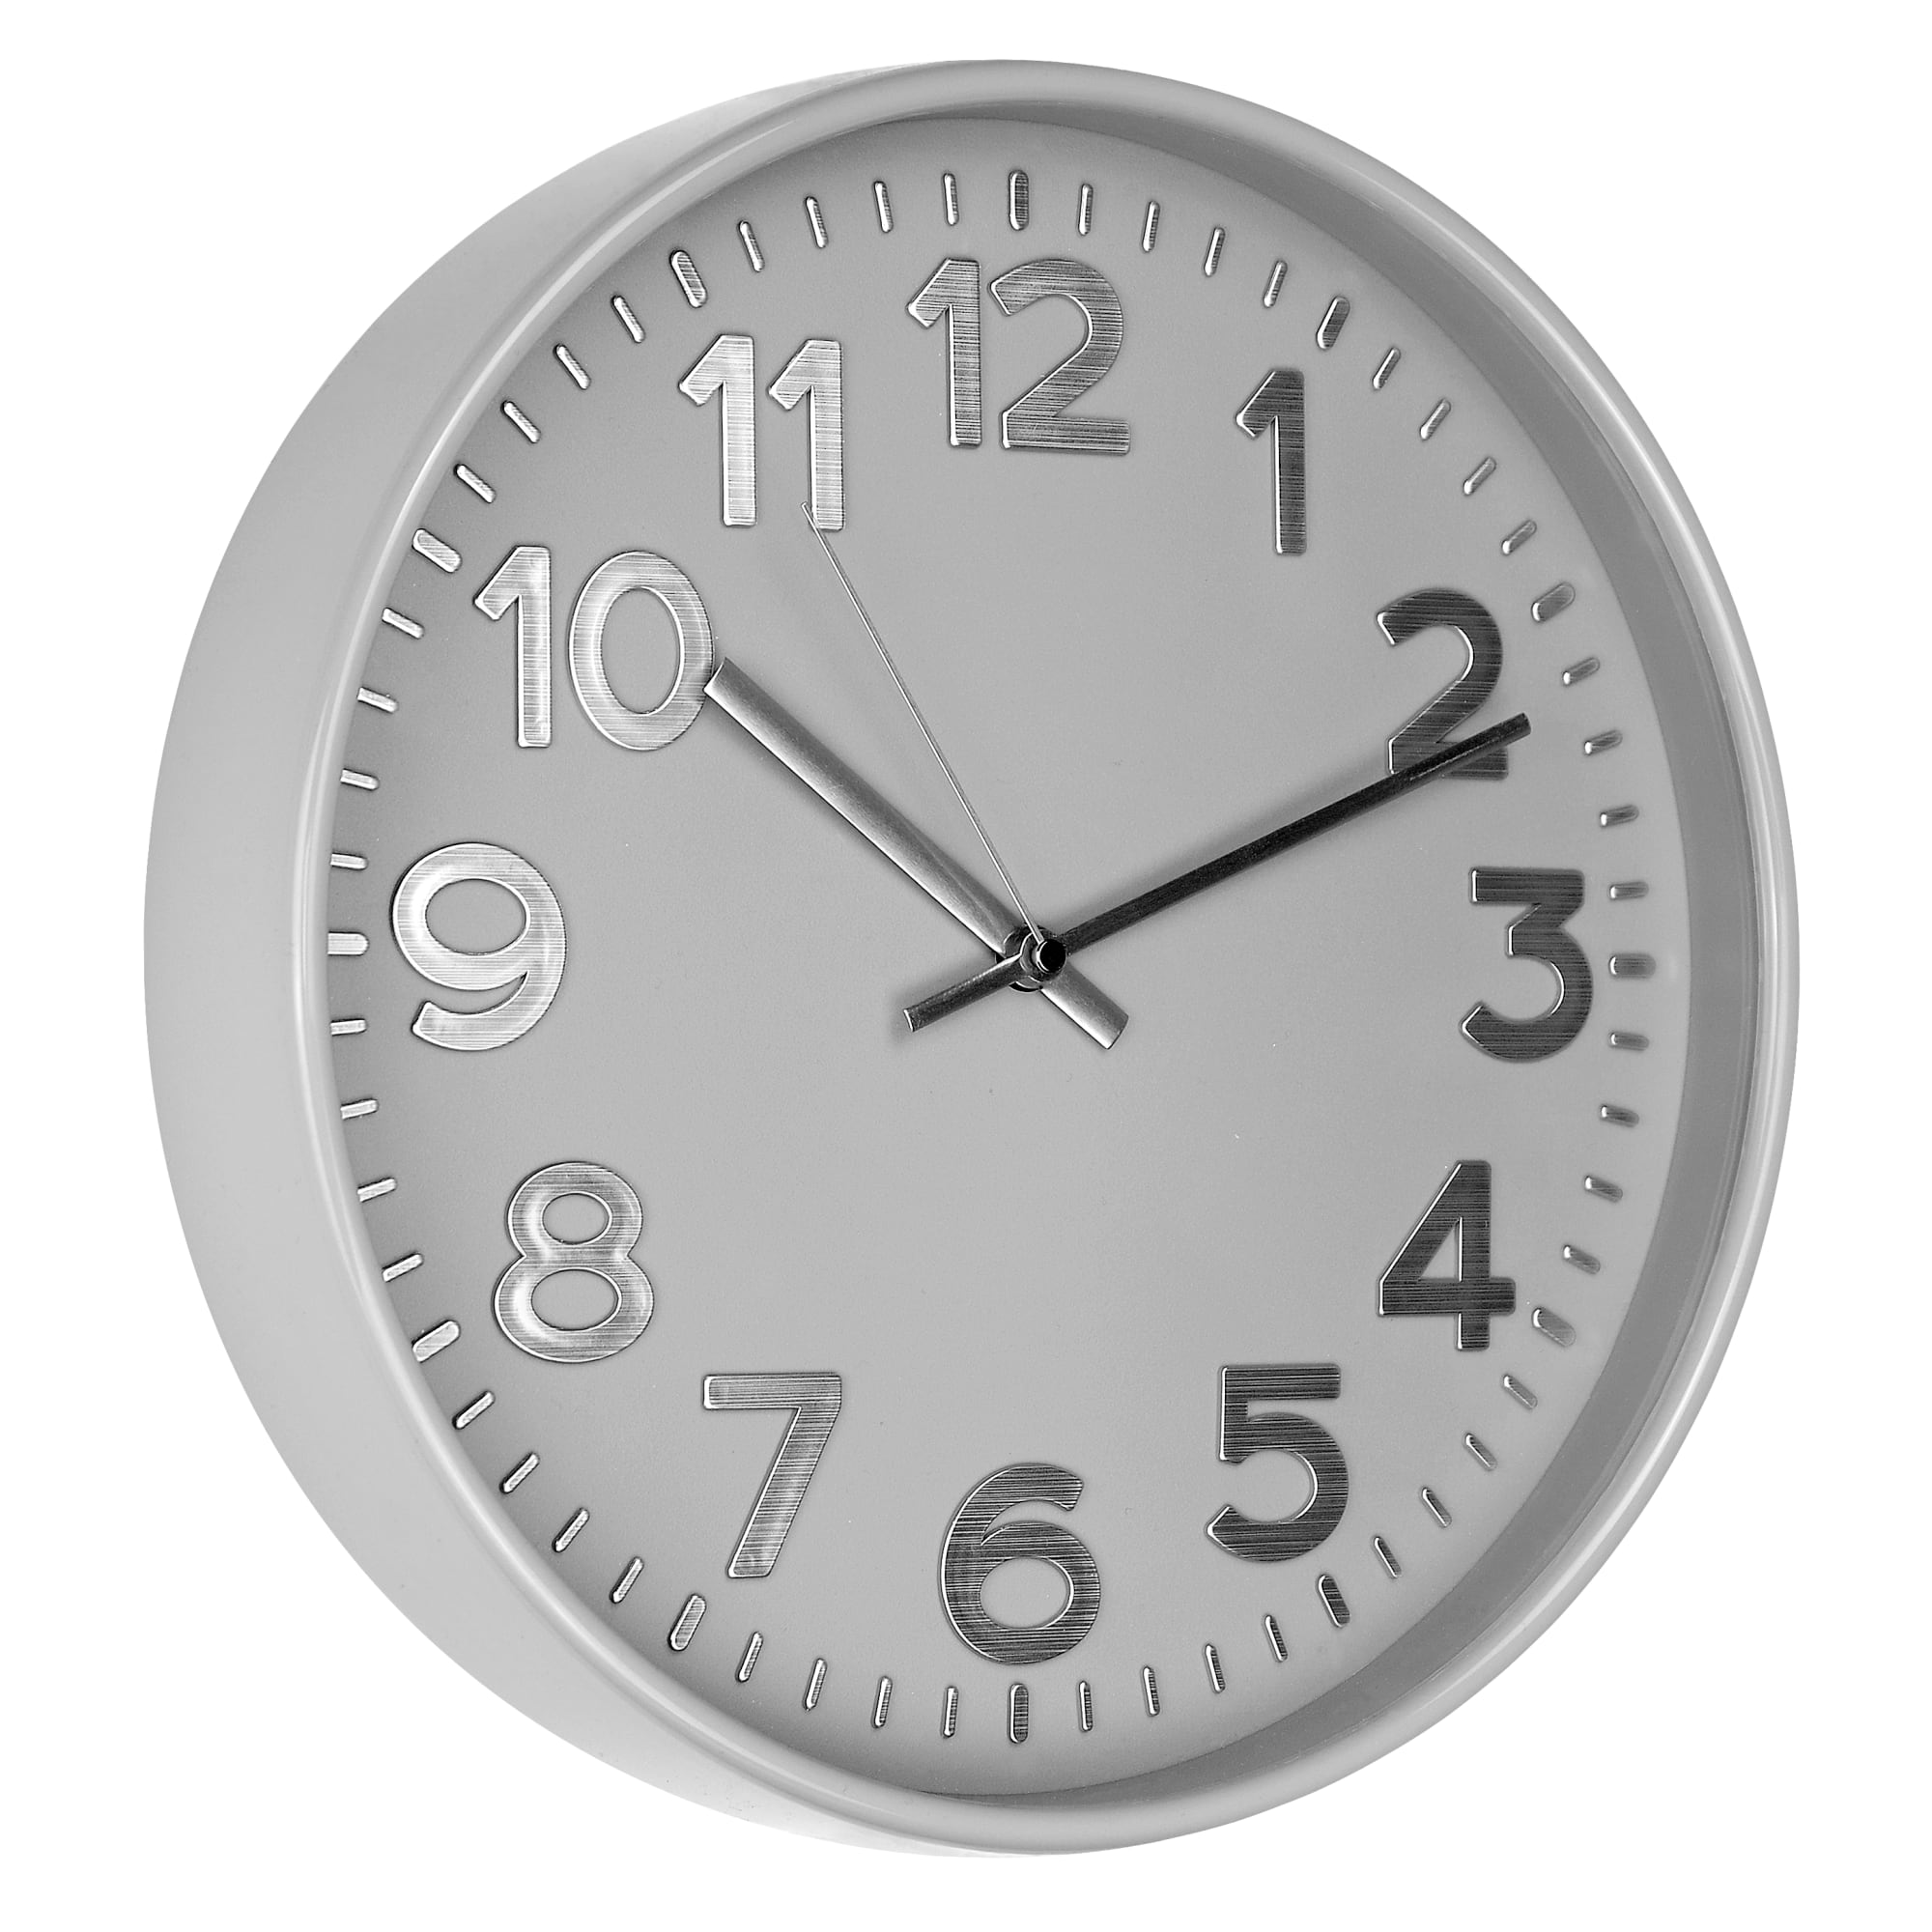 Настенные часы troykatime, d30 см, пластик, цвет серый. Настенные часы troykatime, 30.000 см х 30.000 см. Настенные часы troykatime, 30 см. Настенные часы troykatime, d30 см, пластик, цвет серый 84759066. Настенные часы troykatime